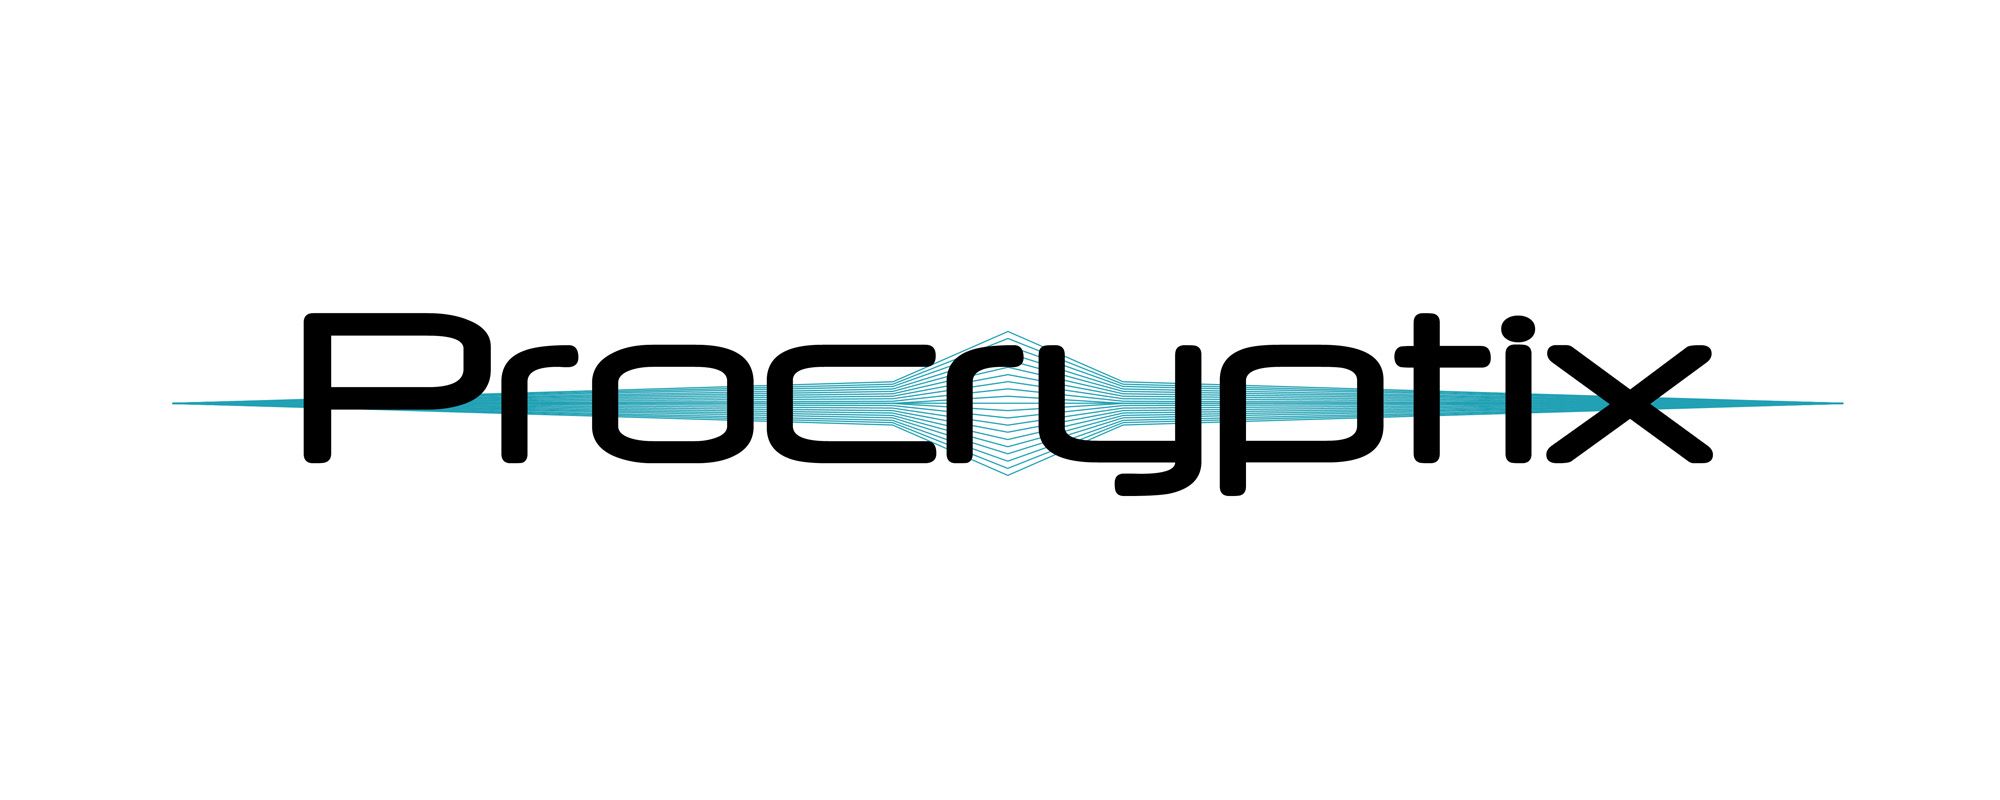 Procryptix Logo 2000x800.jpg